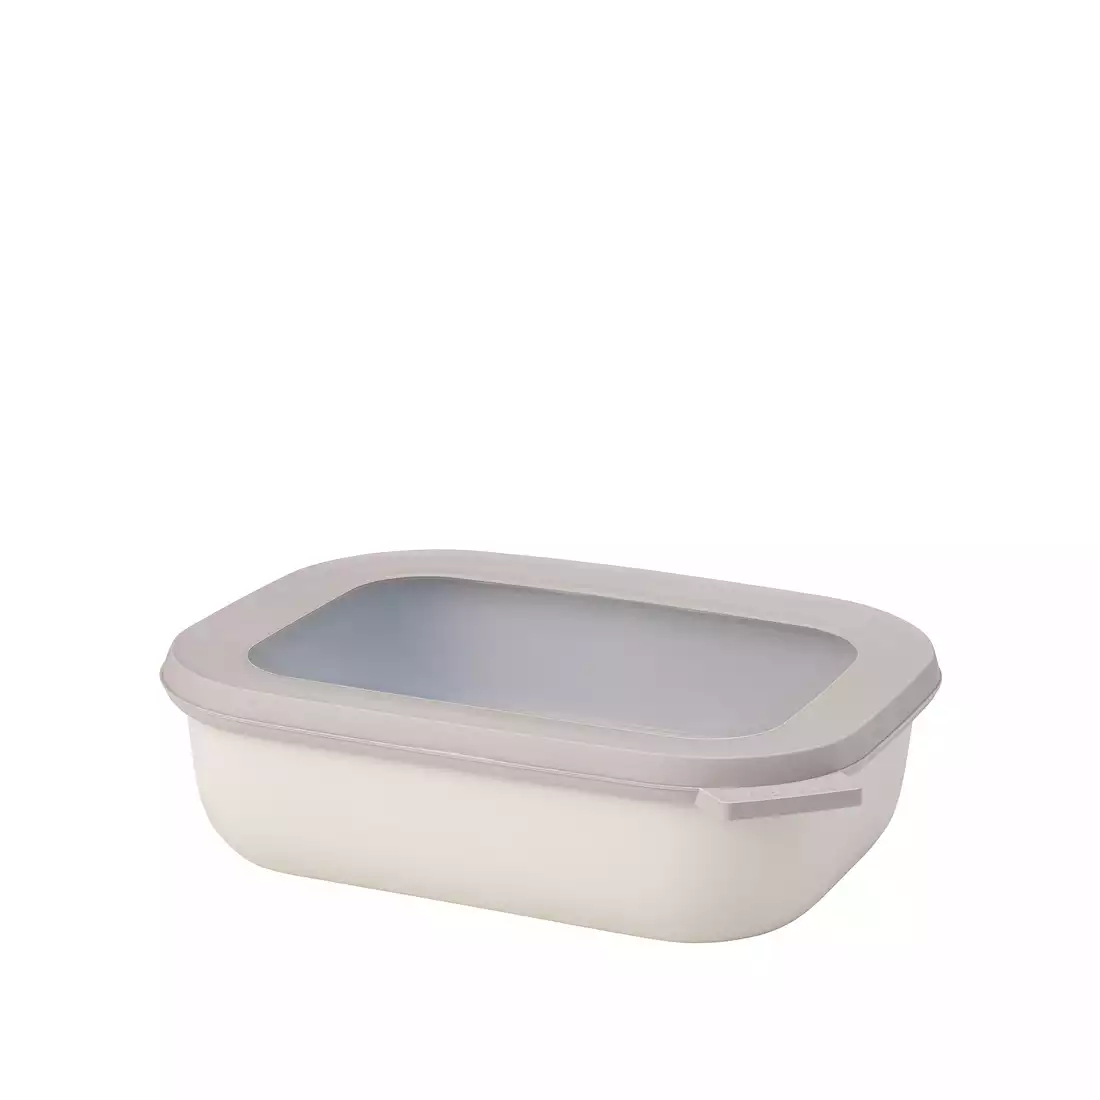 MEPAL CIRQULA rectangular bowl 1000 ml, nordic white